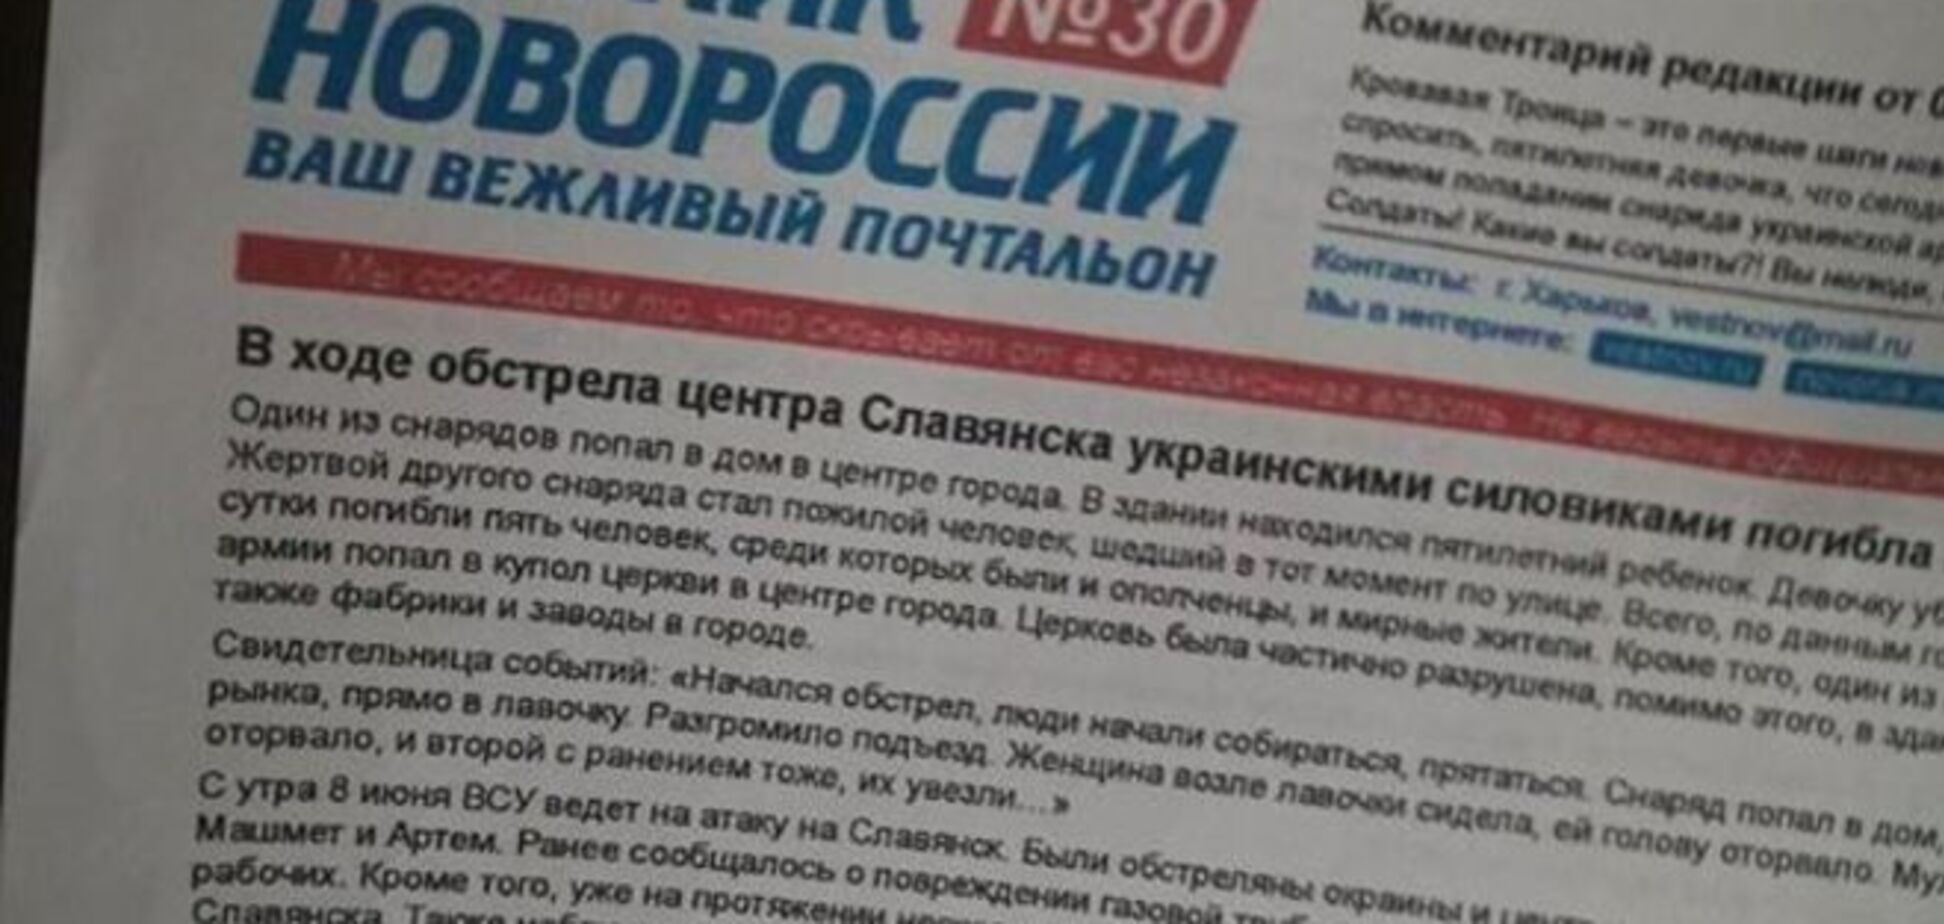 В Киеве появились листовки сепаратистов